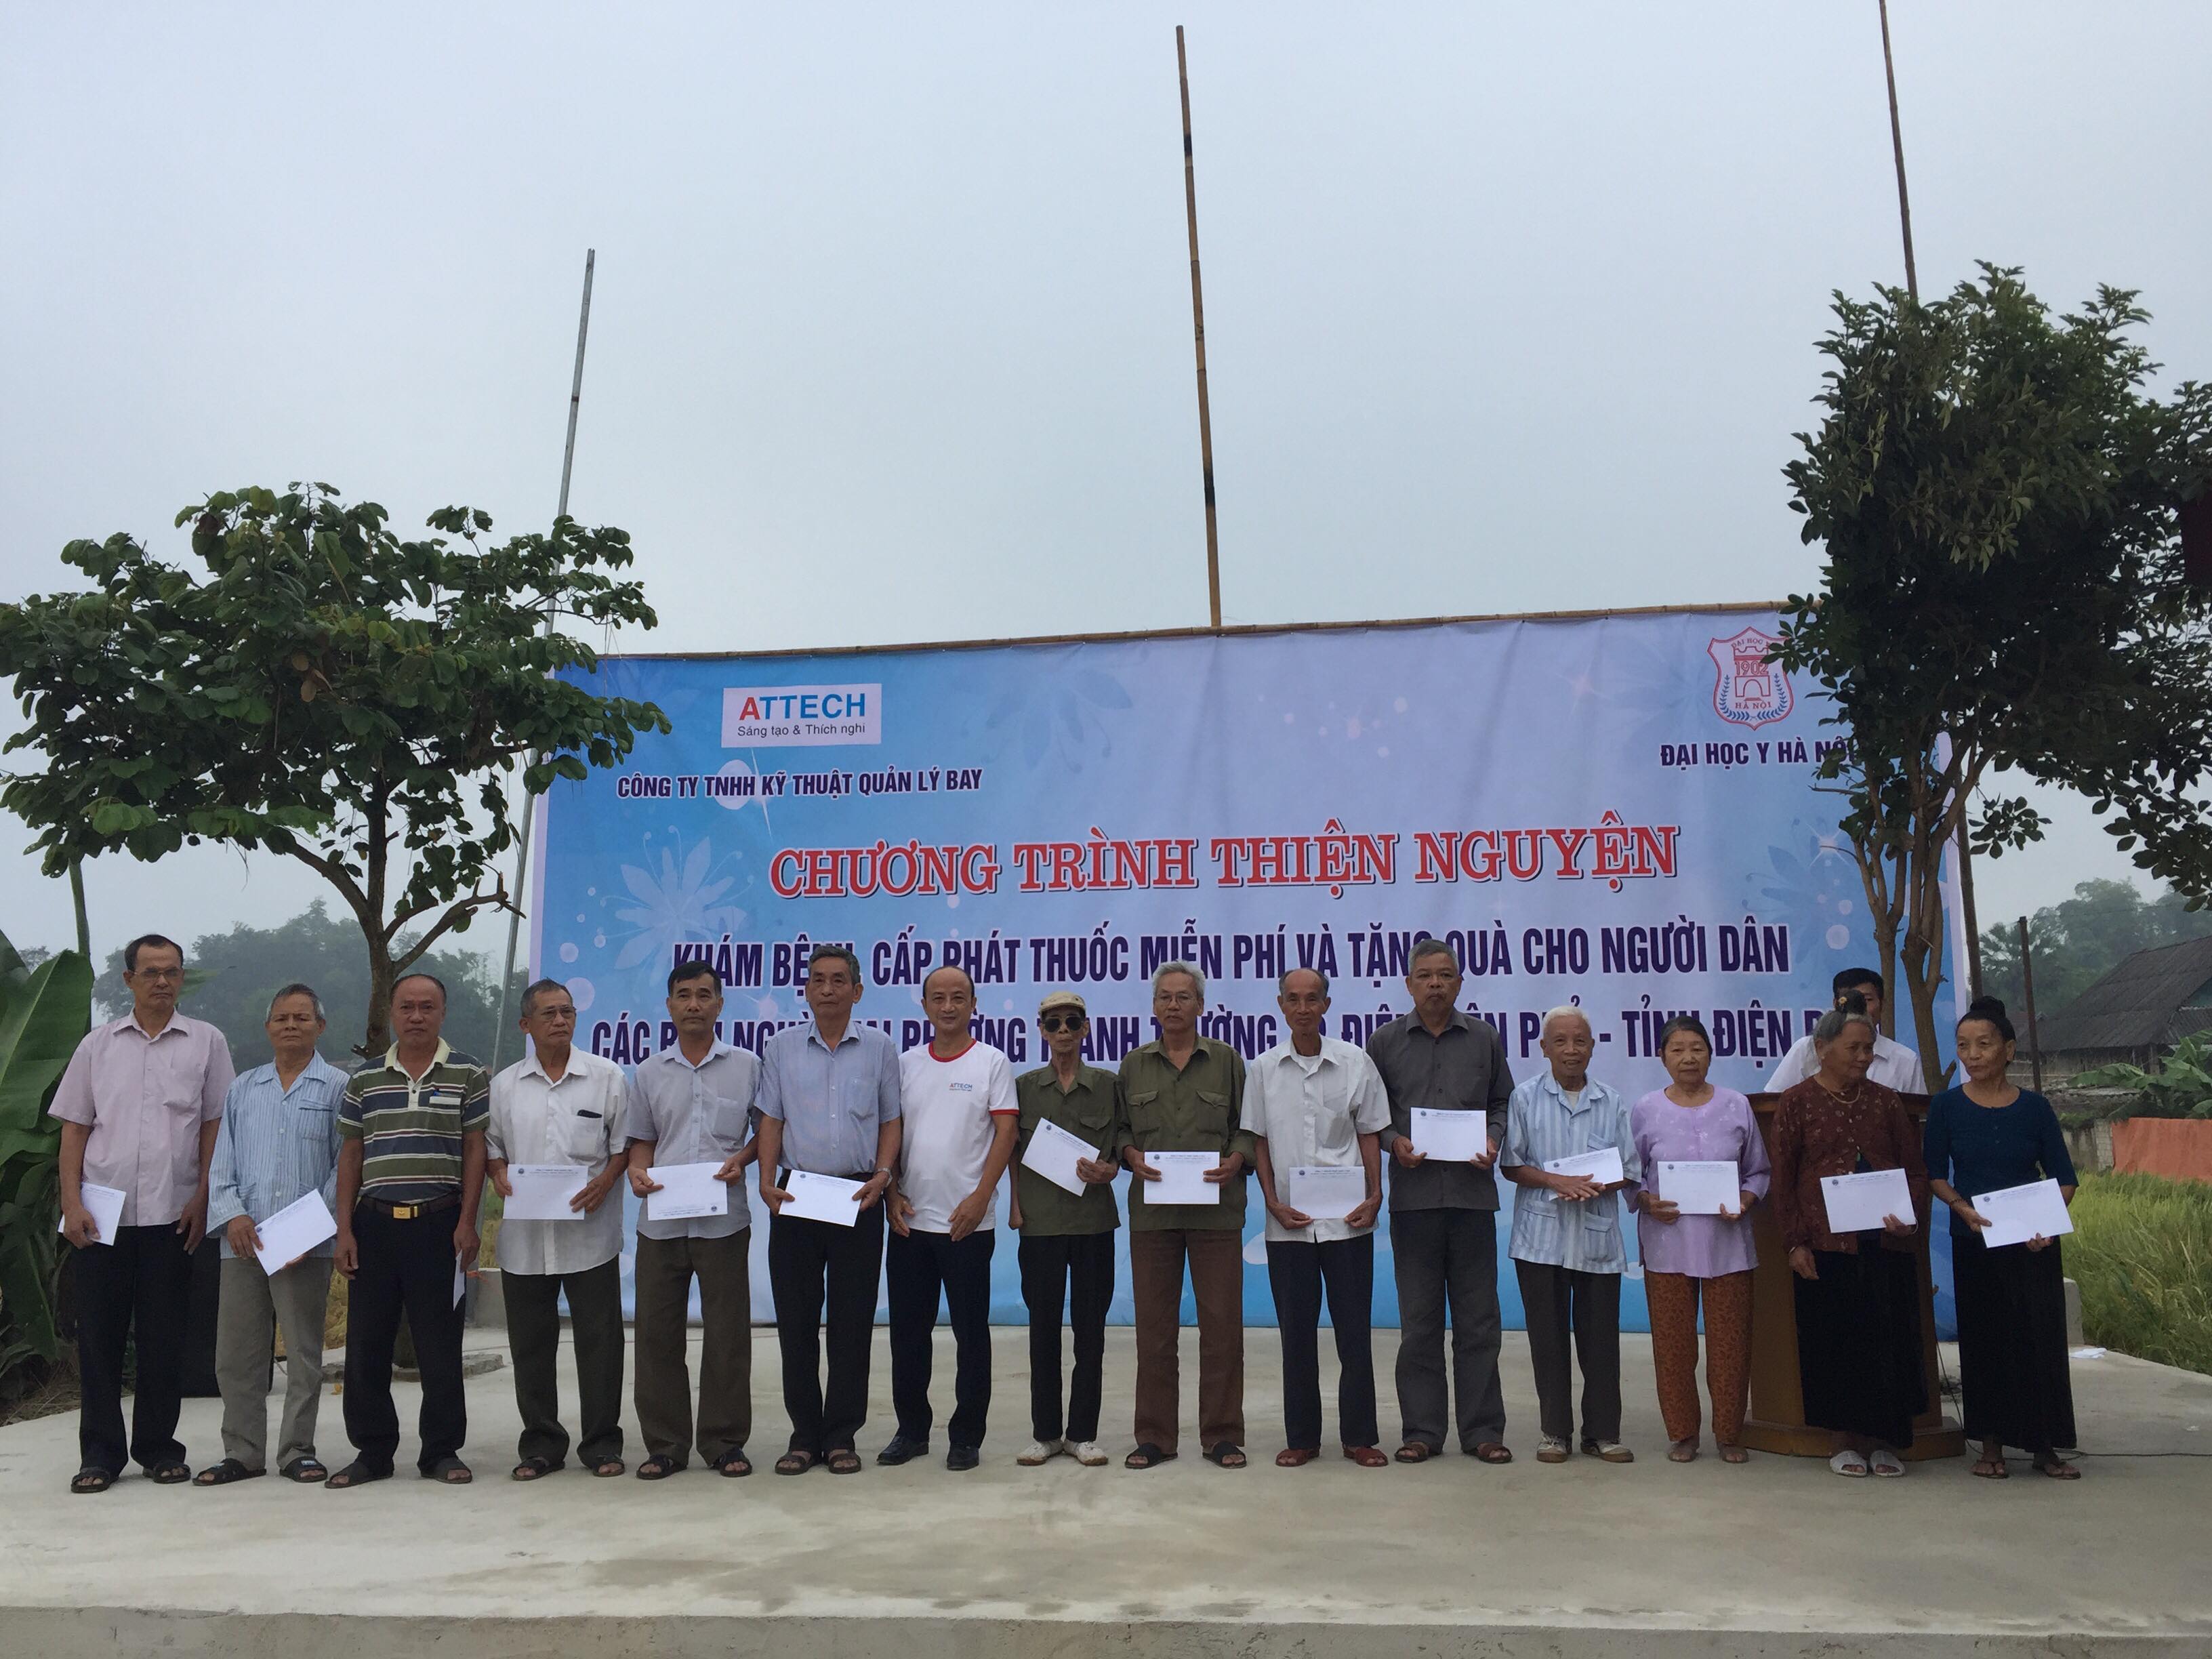 Công ty TNHH Kỹ thuật Quản lý bay thực hiện chương trình xã hội từ thiện tại phường Thanh Trường, thành phố Điện Biên Phủ